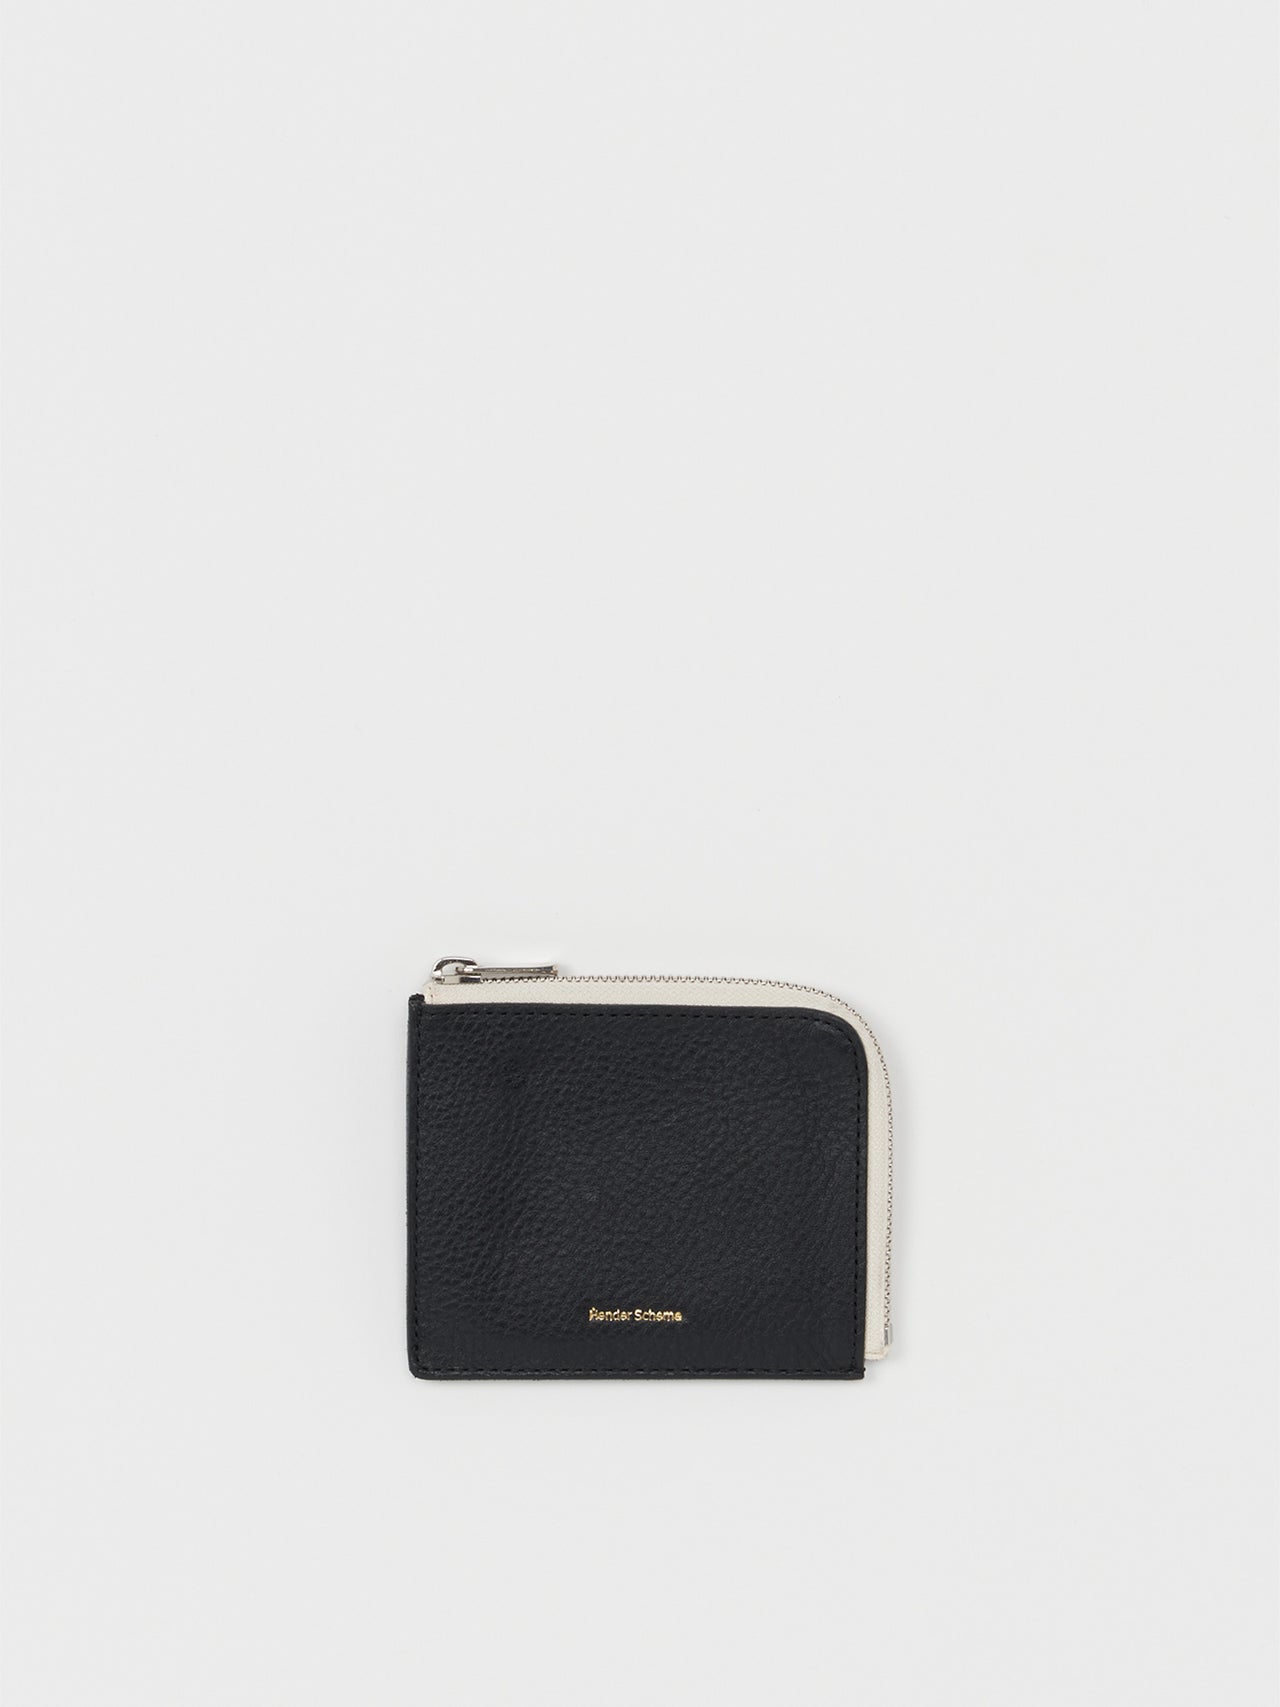 Hender Scheme / L zip purse (BLACK)